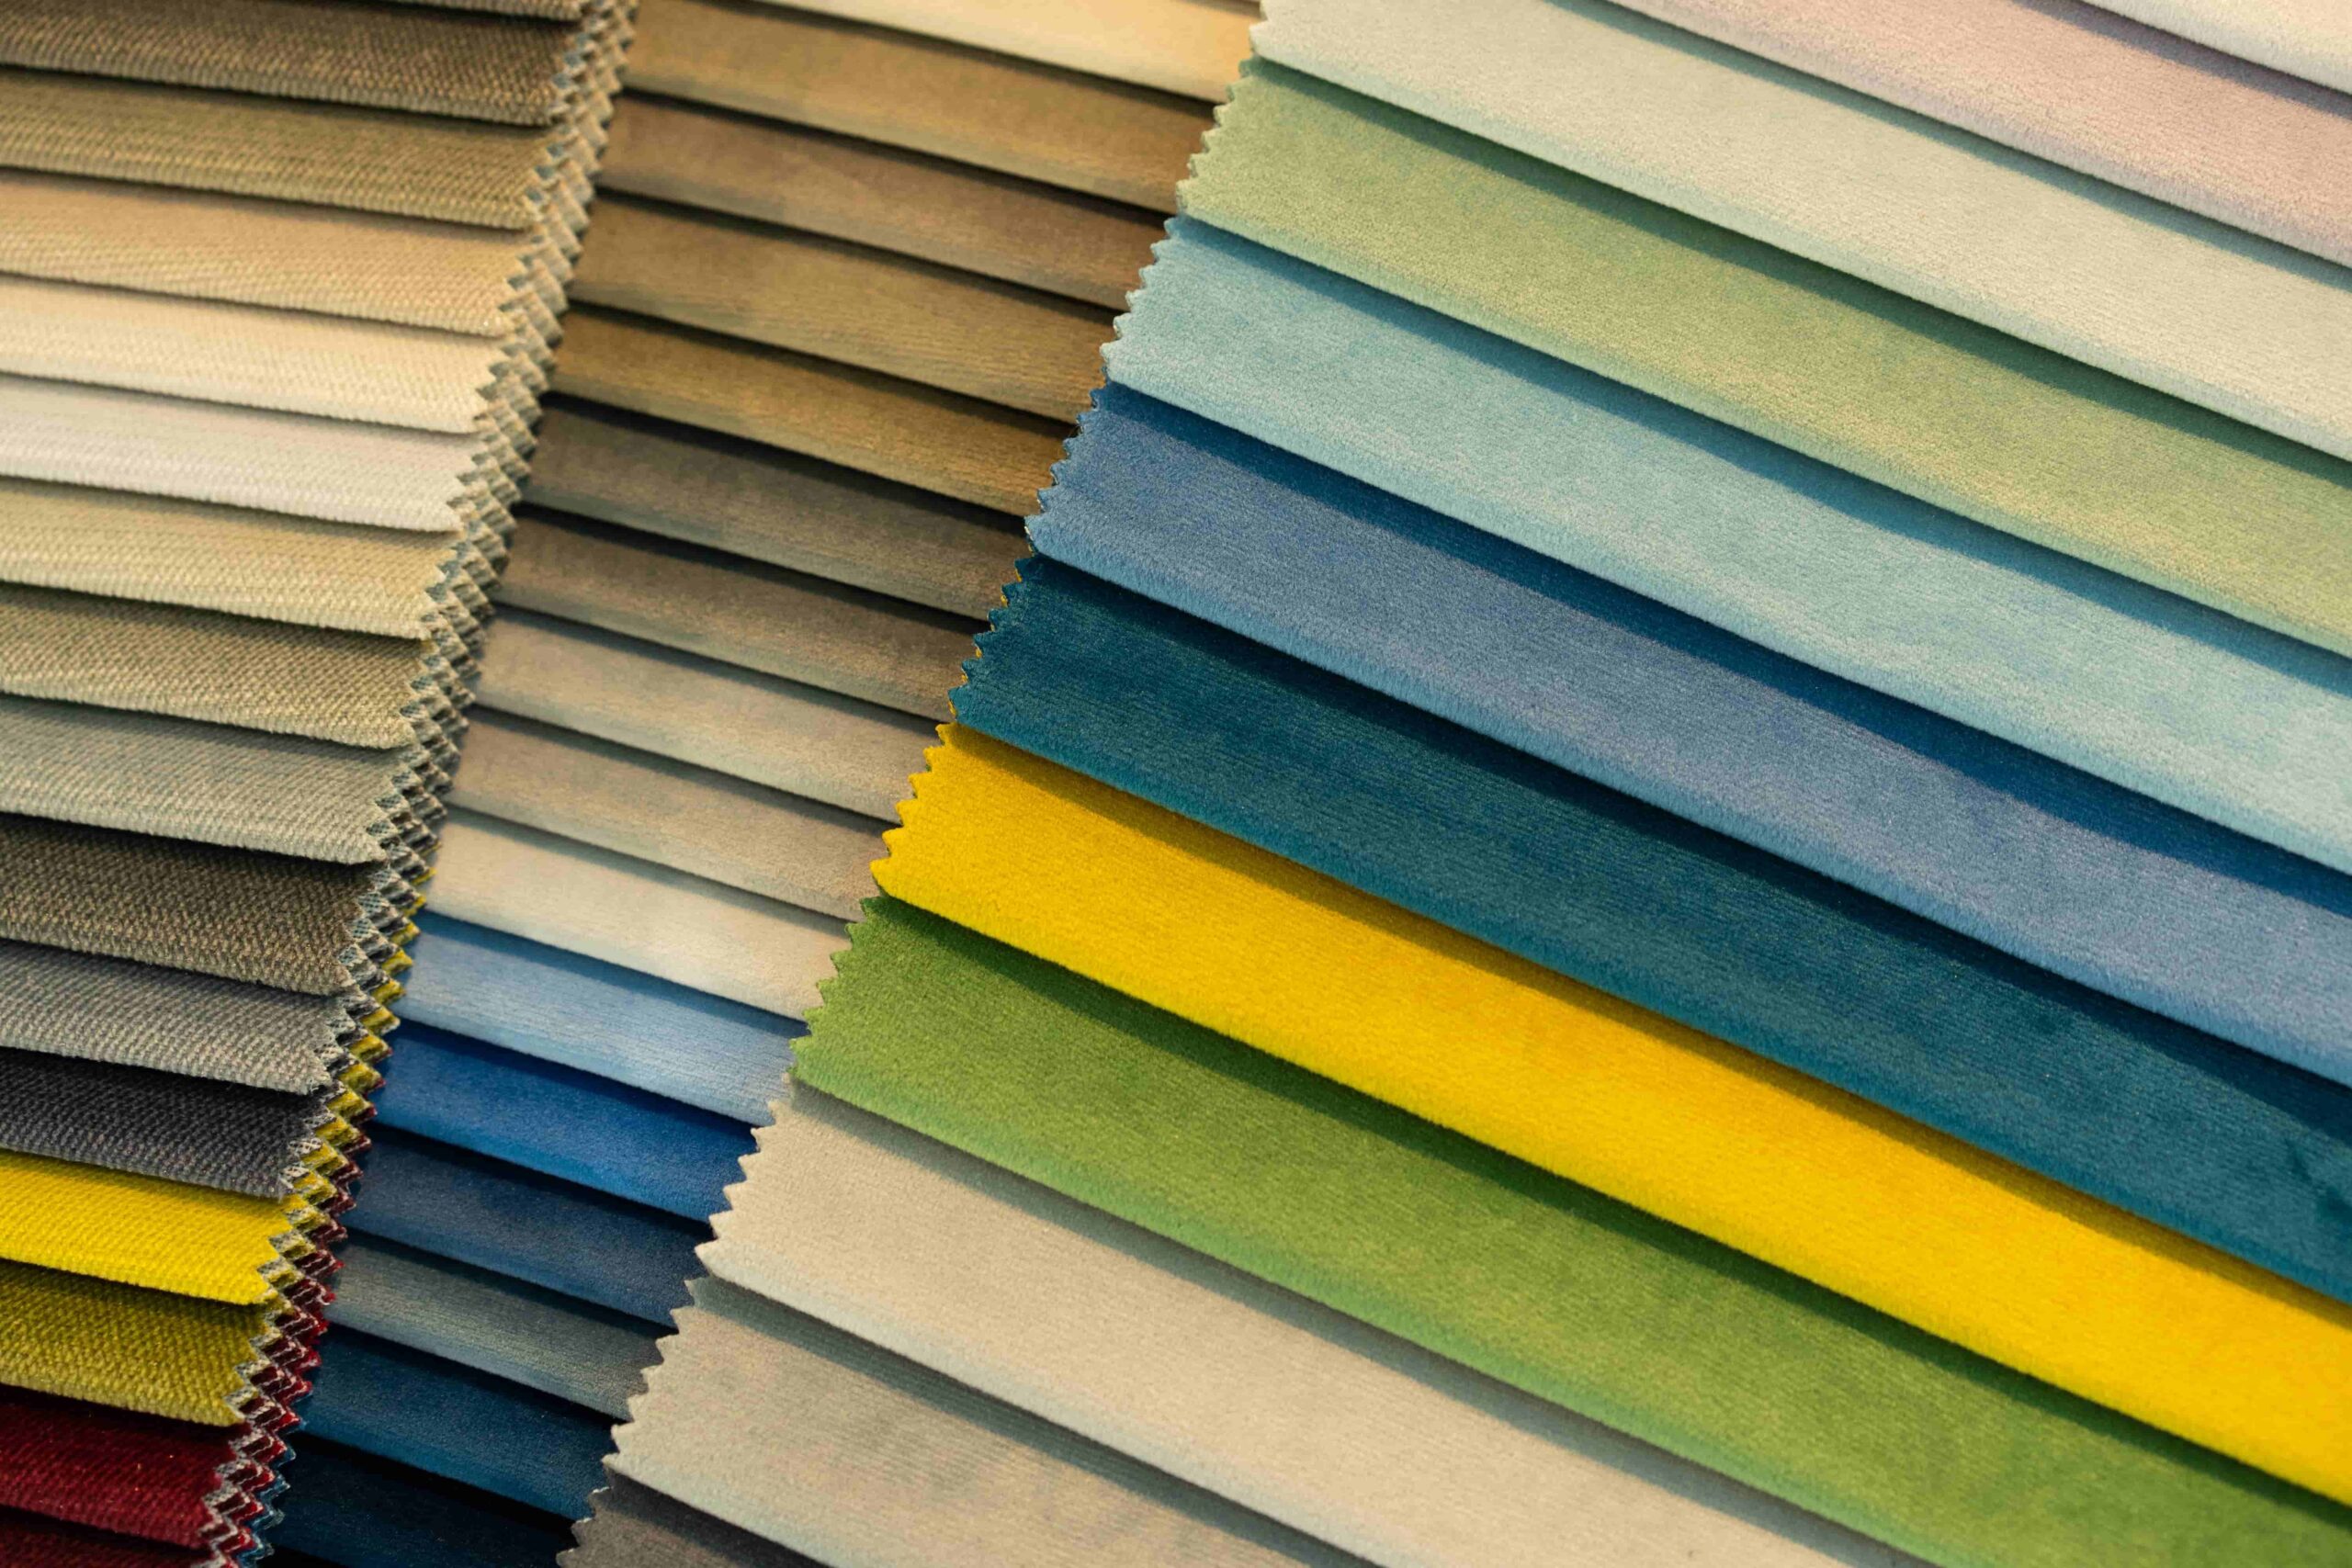 каталог образцов разноцветных тканей в текстильном масштабе